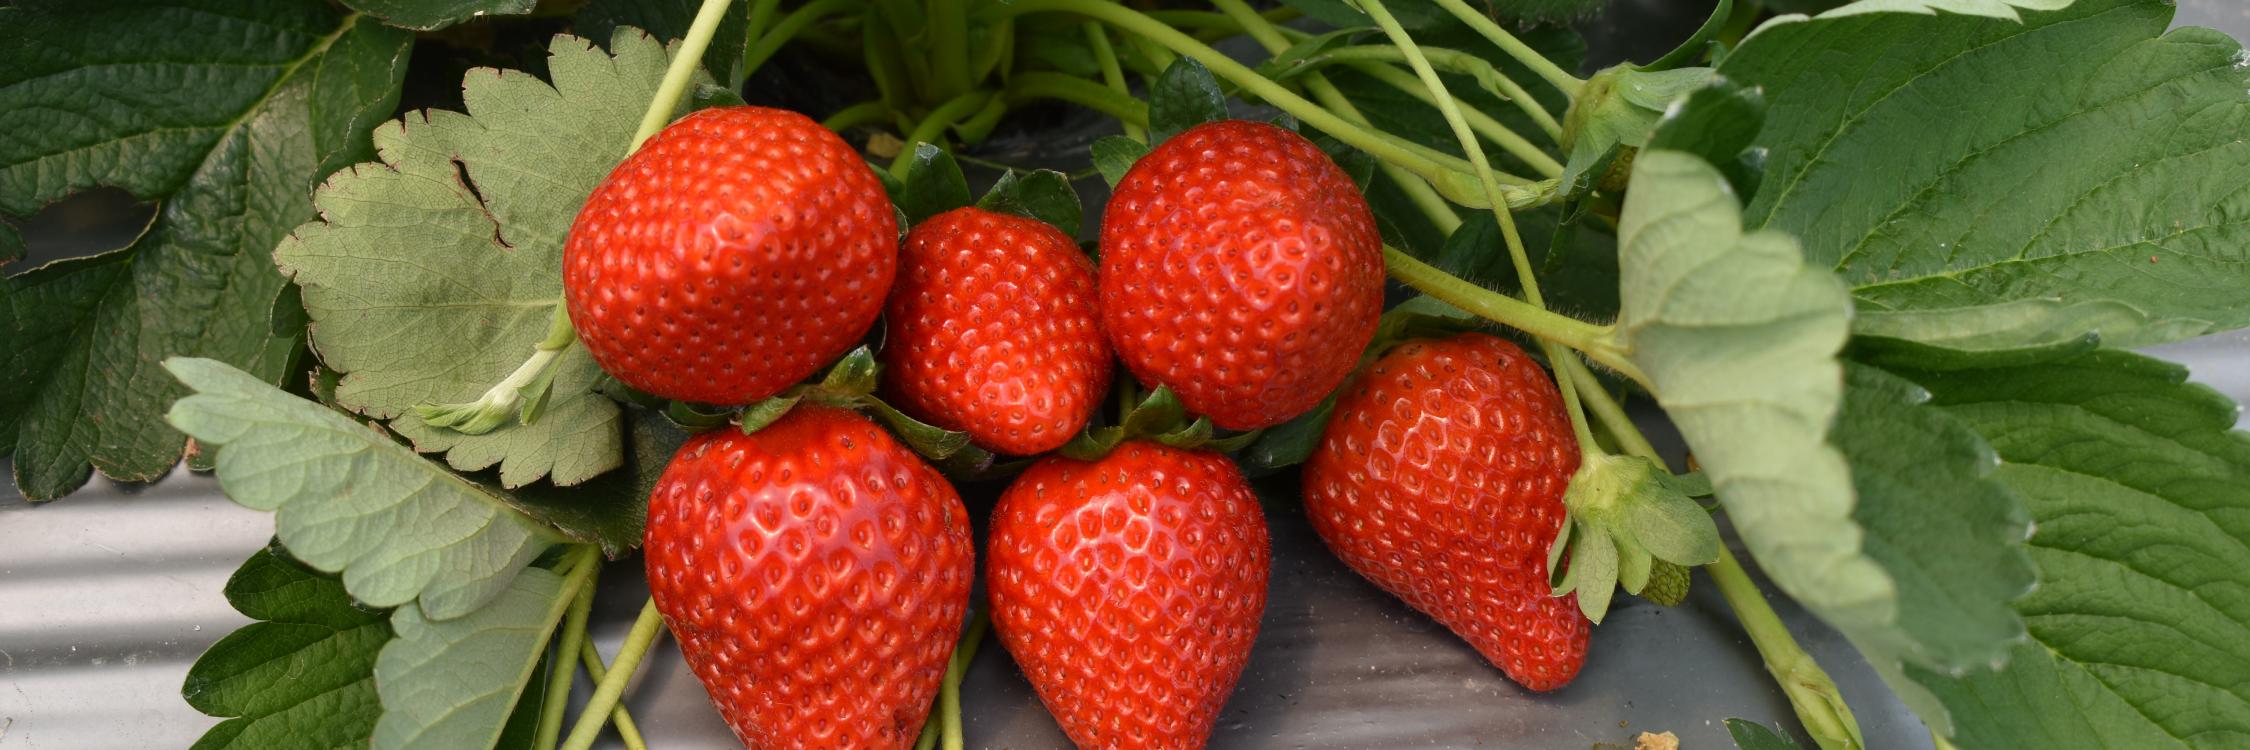 strawberries 002